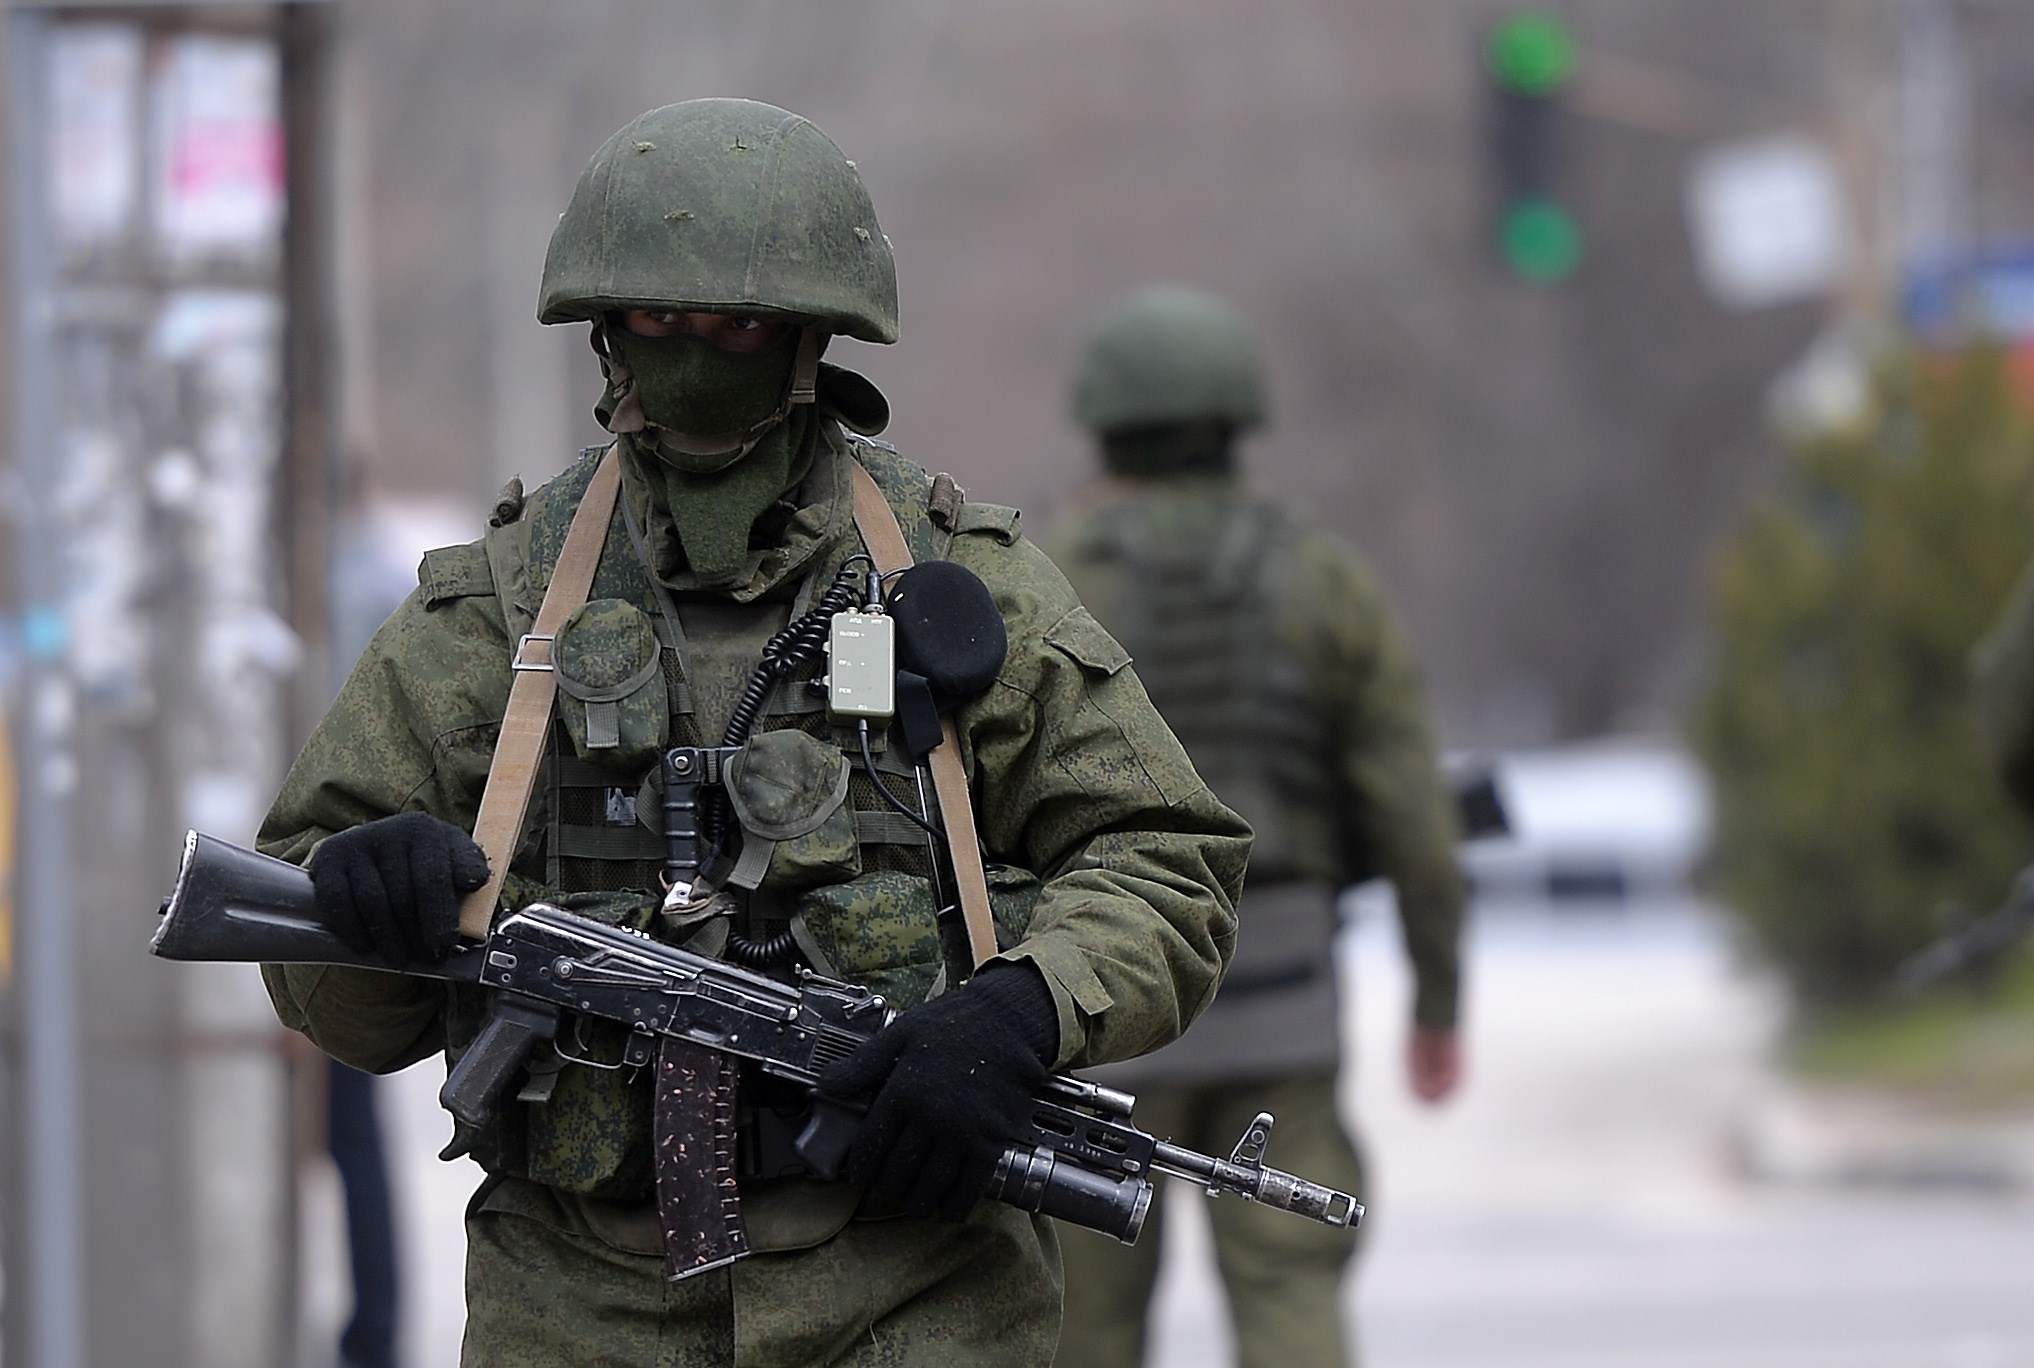 العثور على تسعة مدنيين مقتولين بالرصاص في منزل بشرقي أوكرانيا